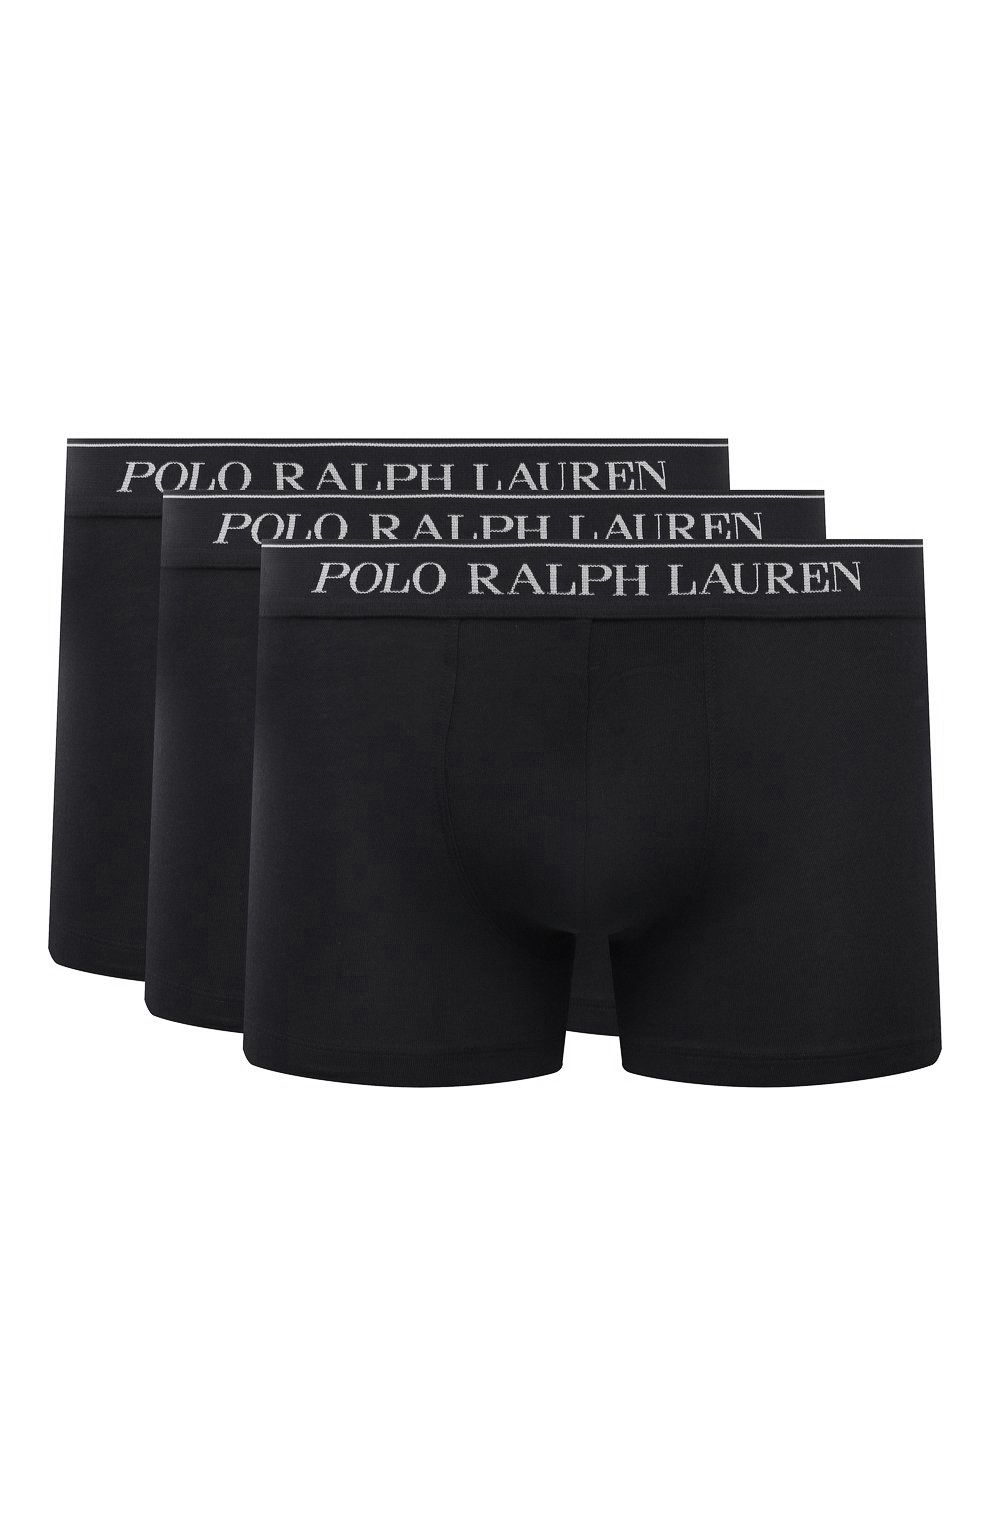 Polo Ralph Lauren Boxershort Zwart 078600-001-L